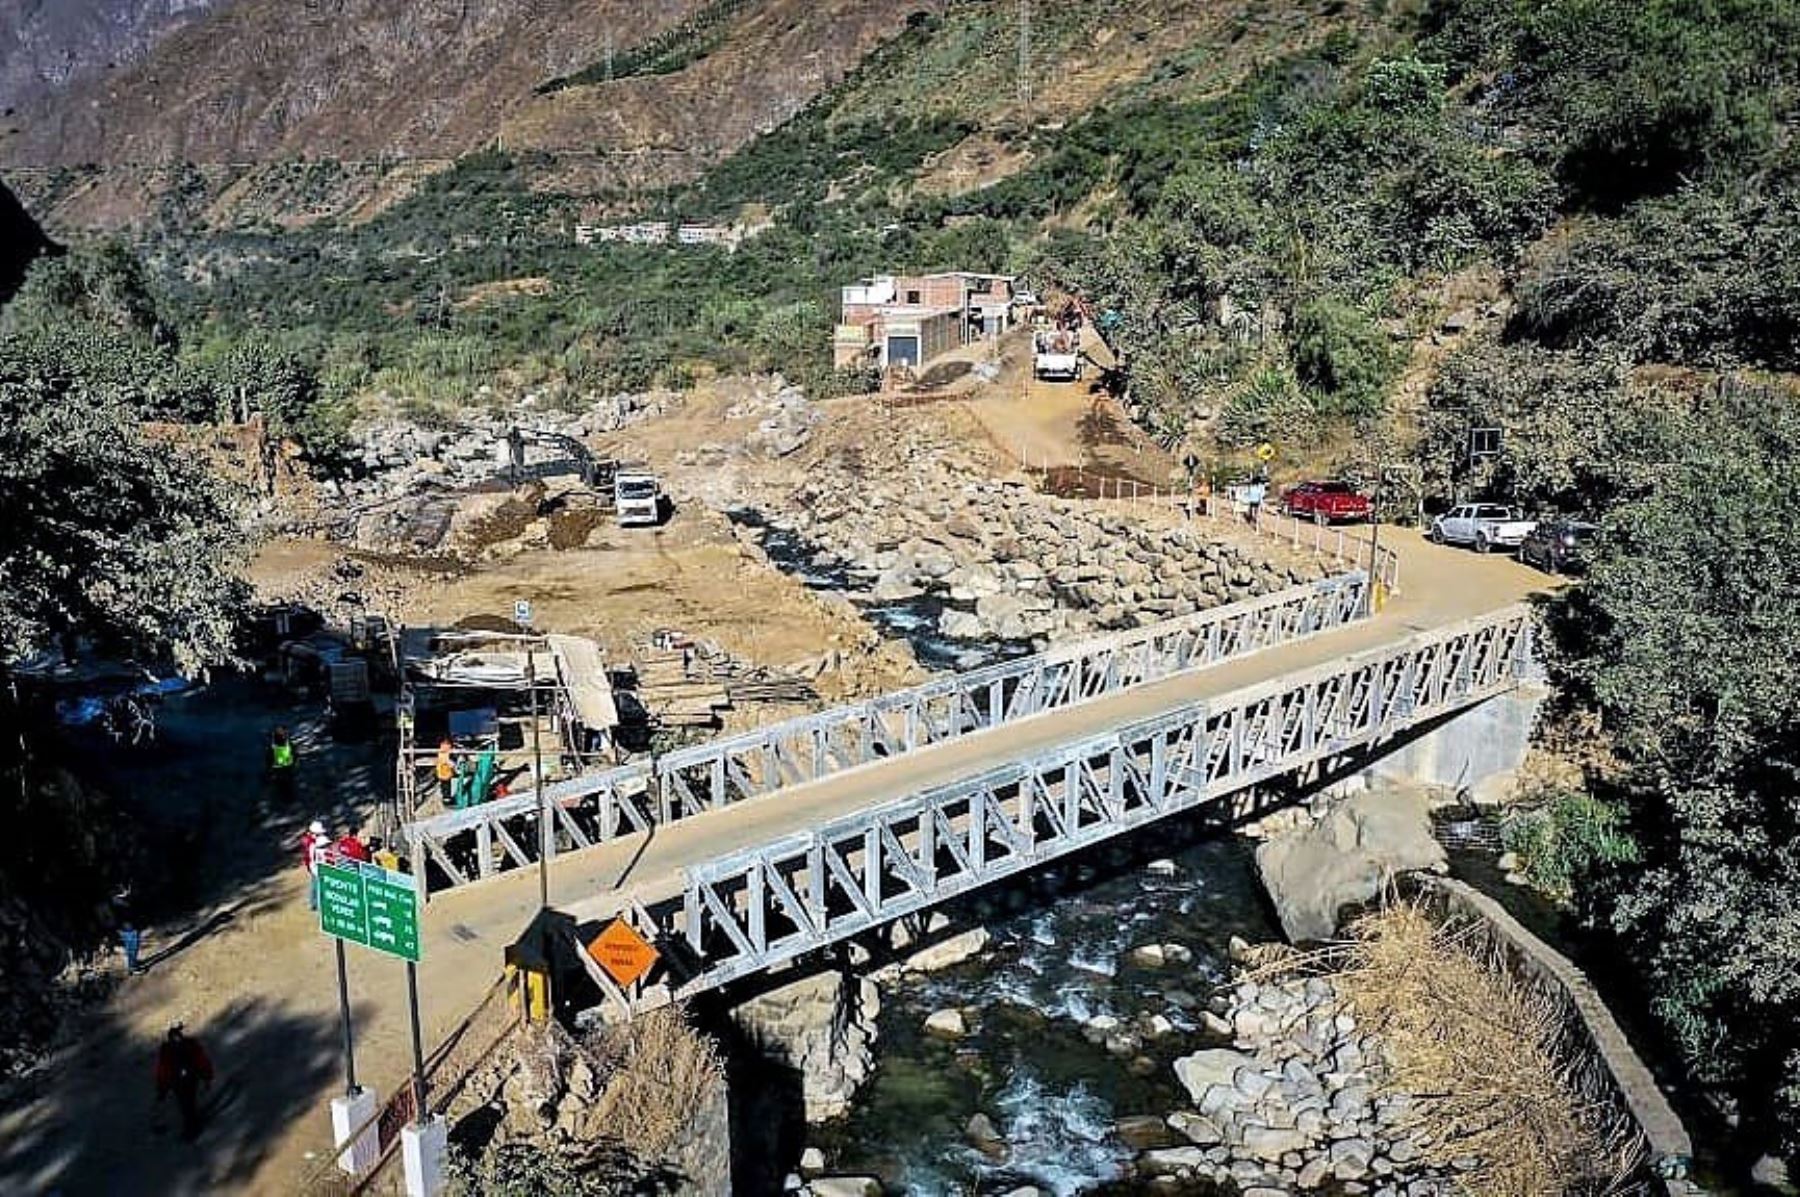 La ministra Paola Lazarte (MTC) inspeccionó el avance de obras en el puente Verde en la provincia de Huarochirí (Lima). Foto: MTC/Difusión